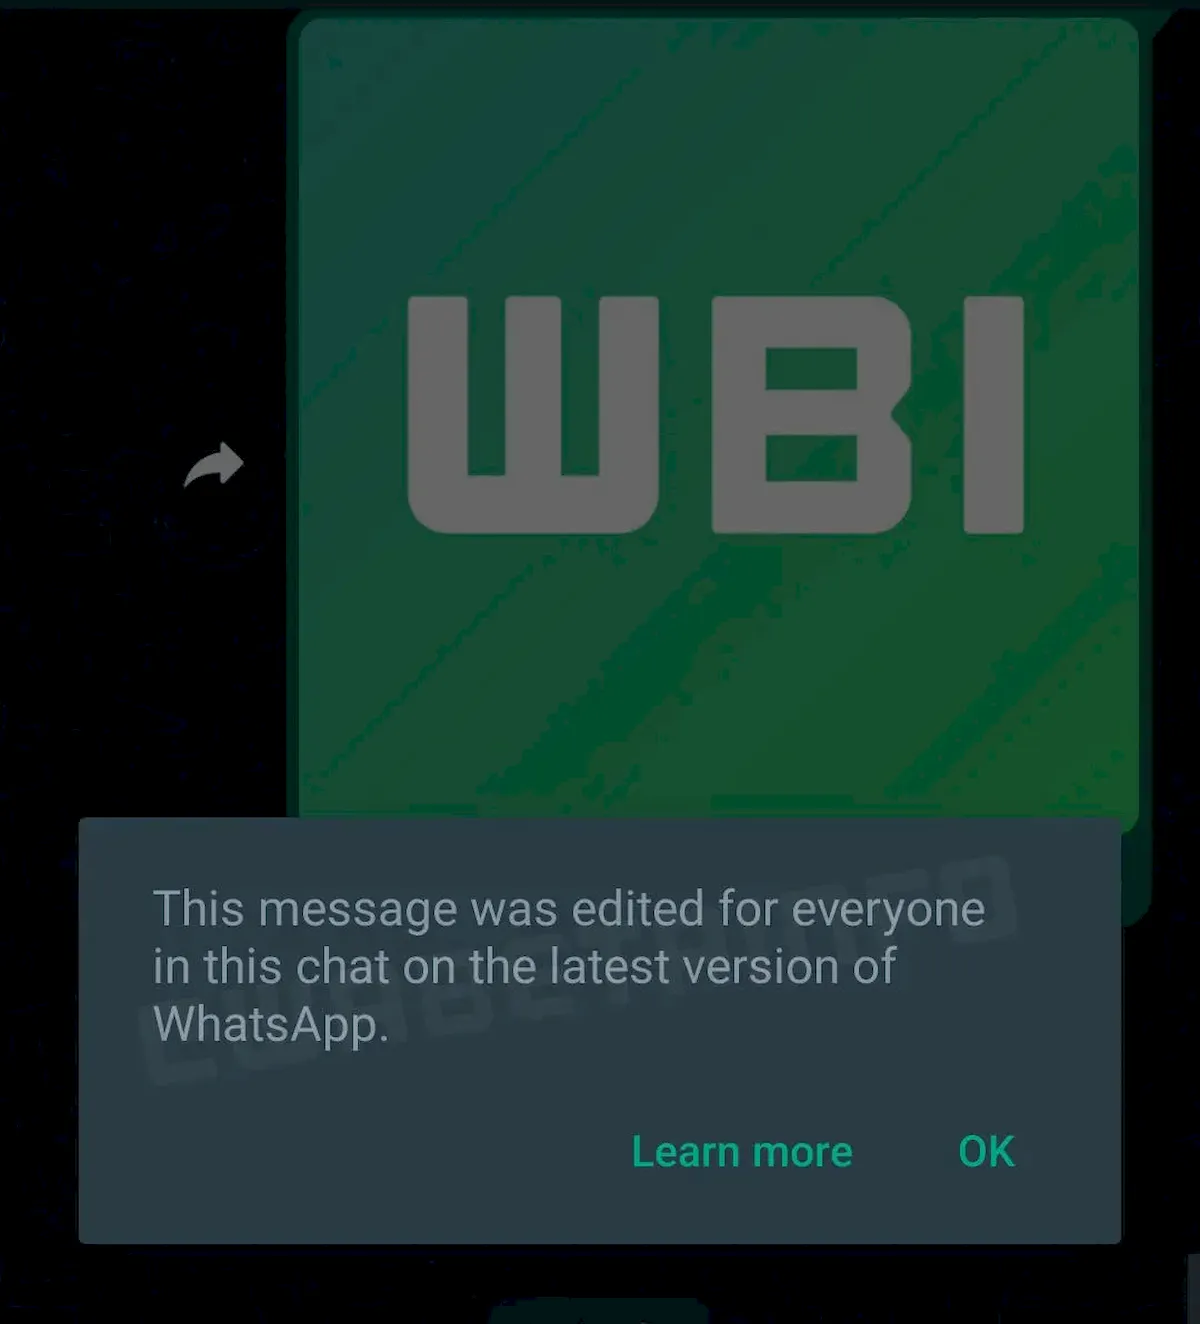 Usuários poderão editar as mensagens enviadas no WhatsApp